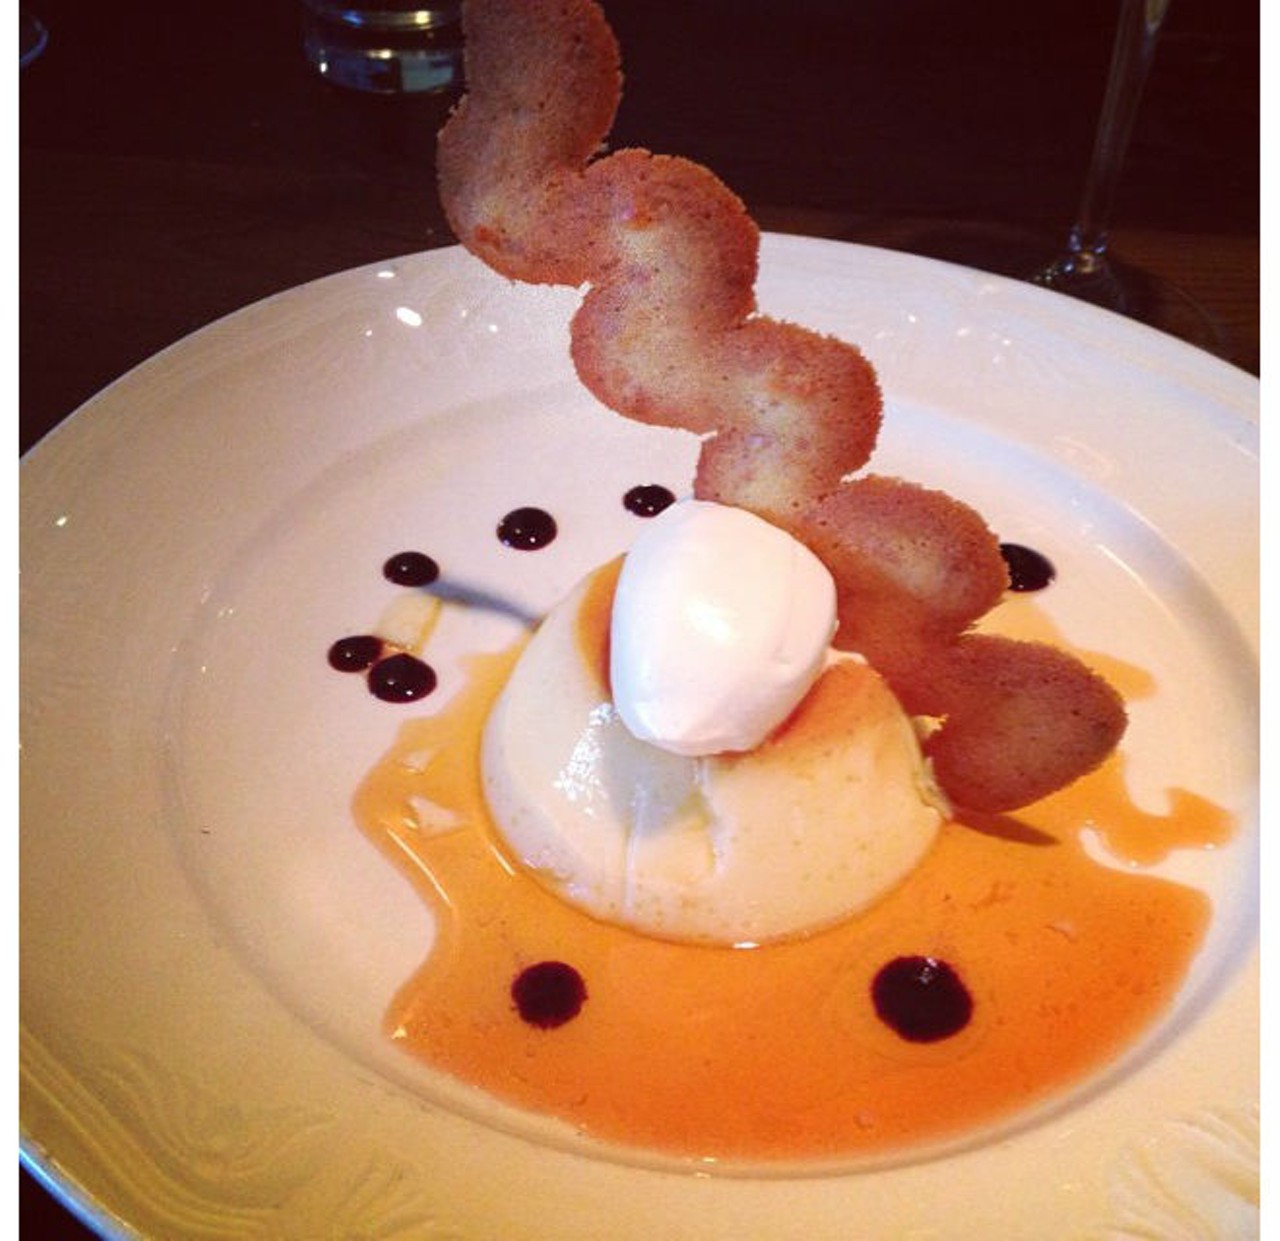 A dessert that looks like modern art: flan from Txokos Basque Kitchen (via Instagram user @kerrieg89)